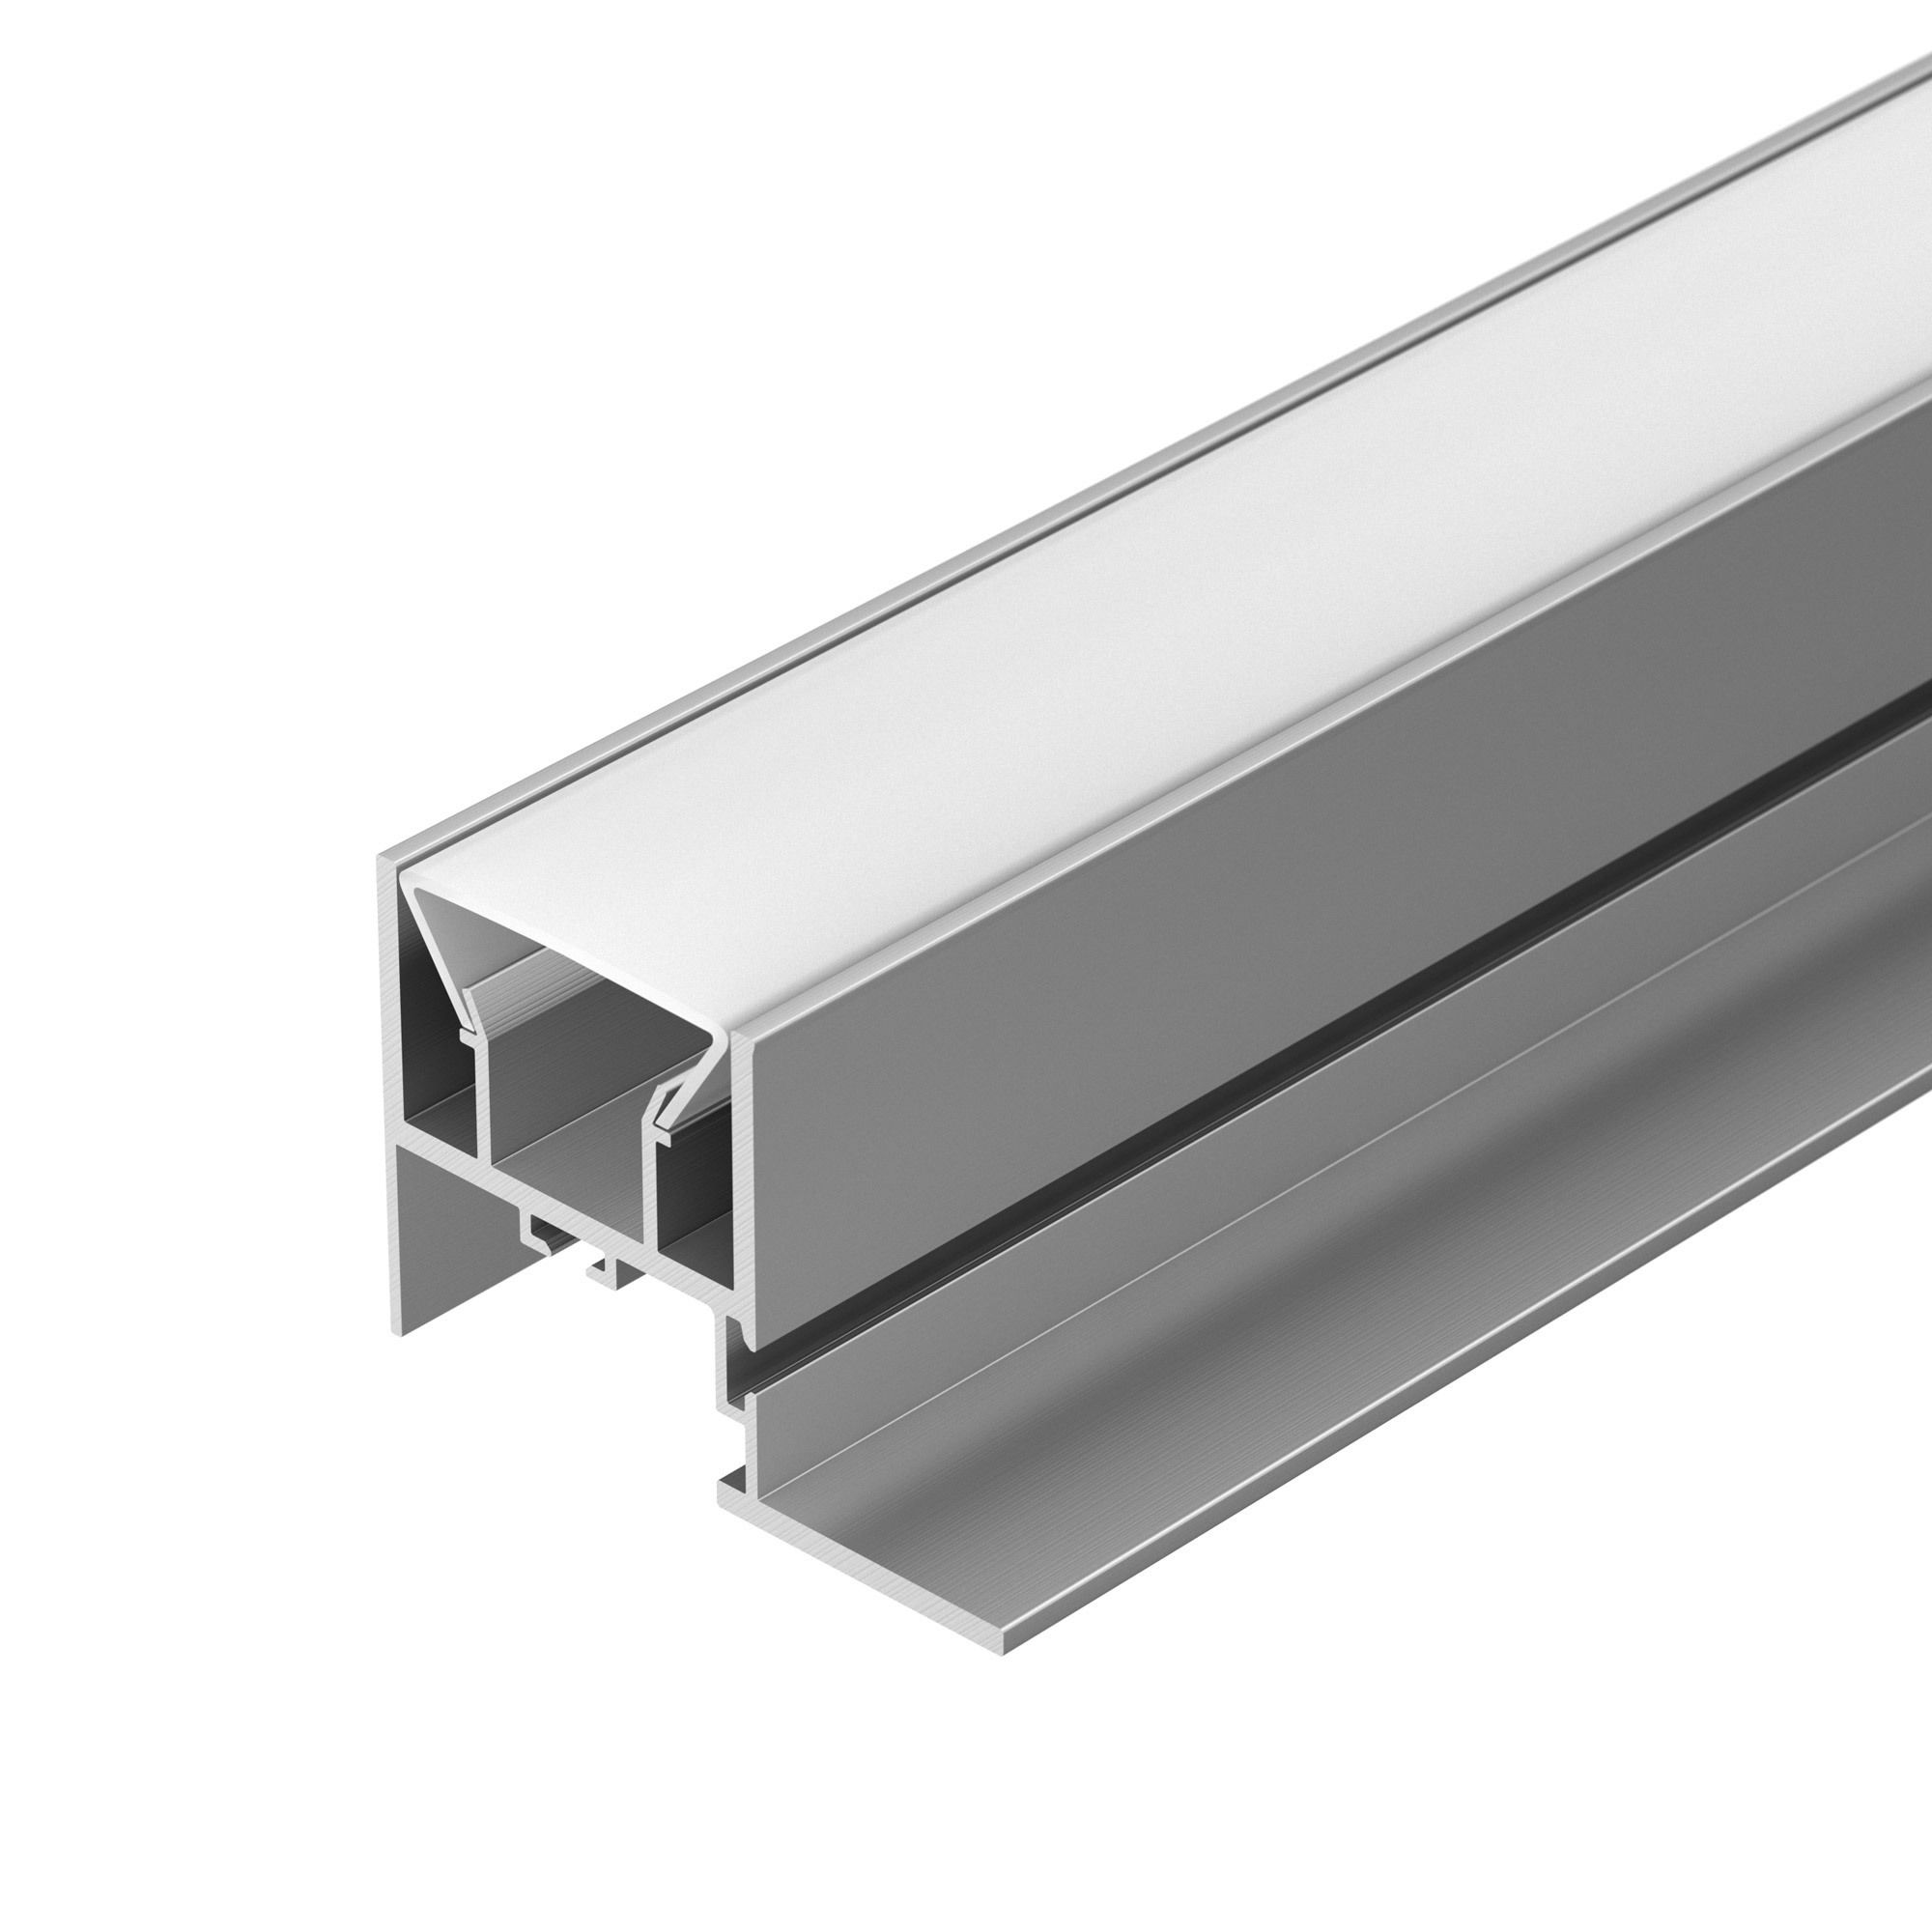 Профиль FOLED-CEIL-SIDE-3000 (Arlight, Алюминий) алюминиевый профиль ниши скрытого монтажа для гкл потолка alm 11681 pl b 2m